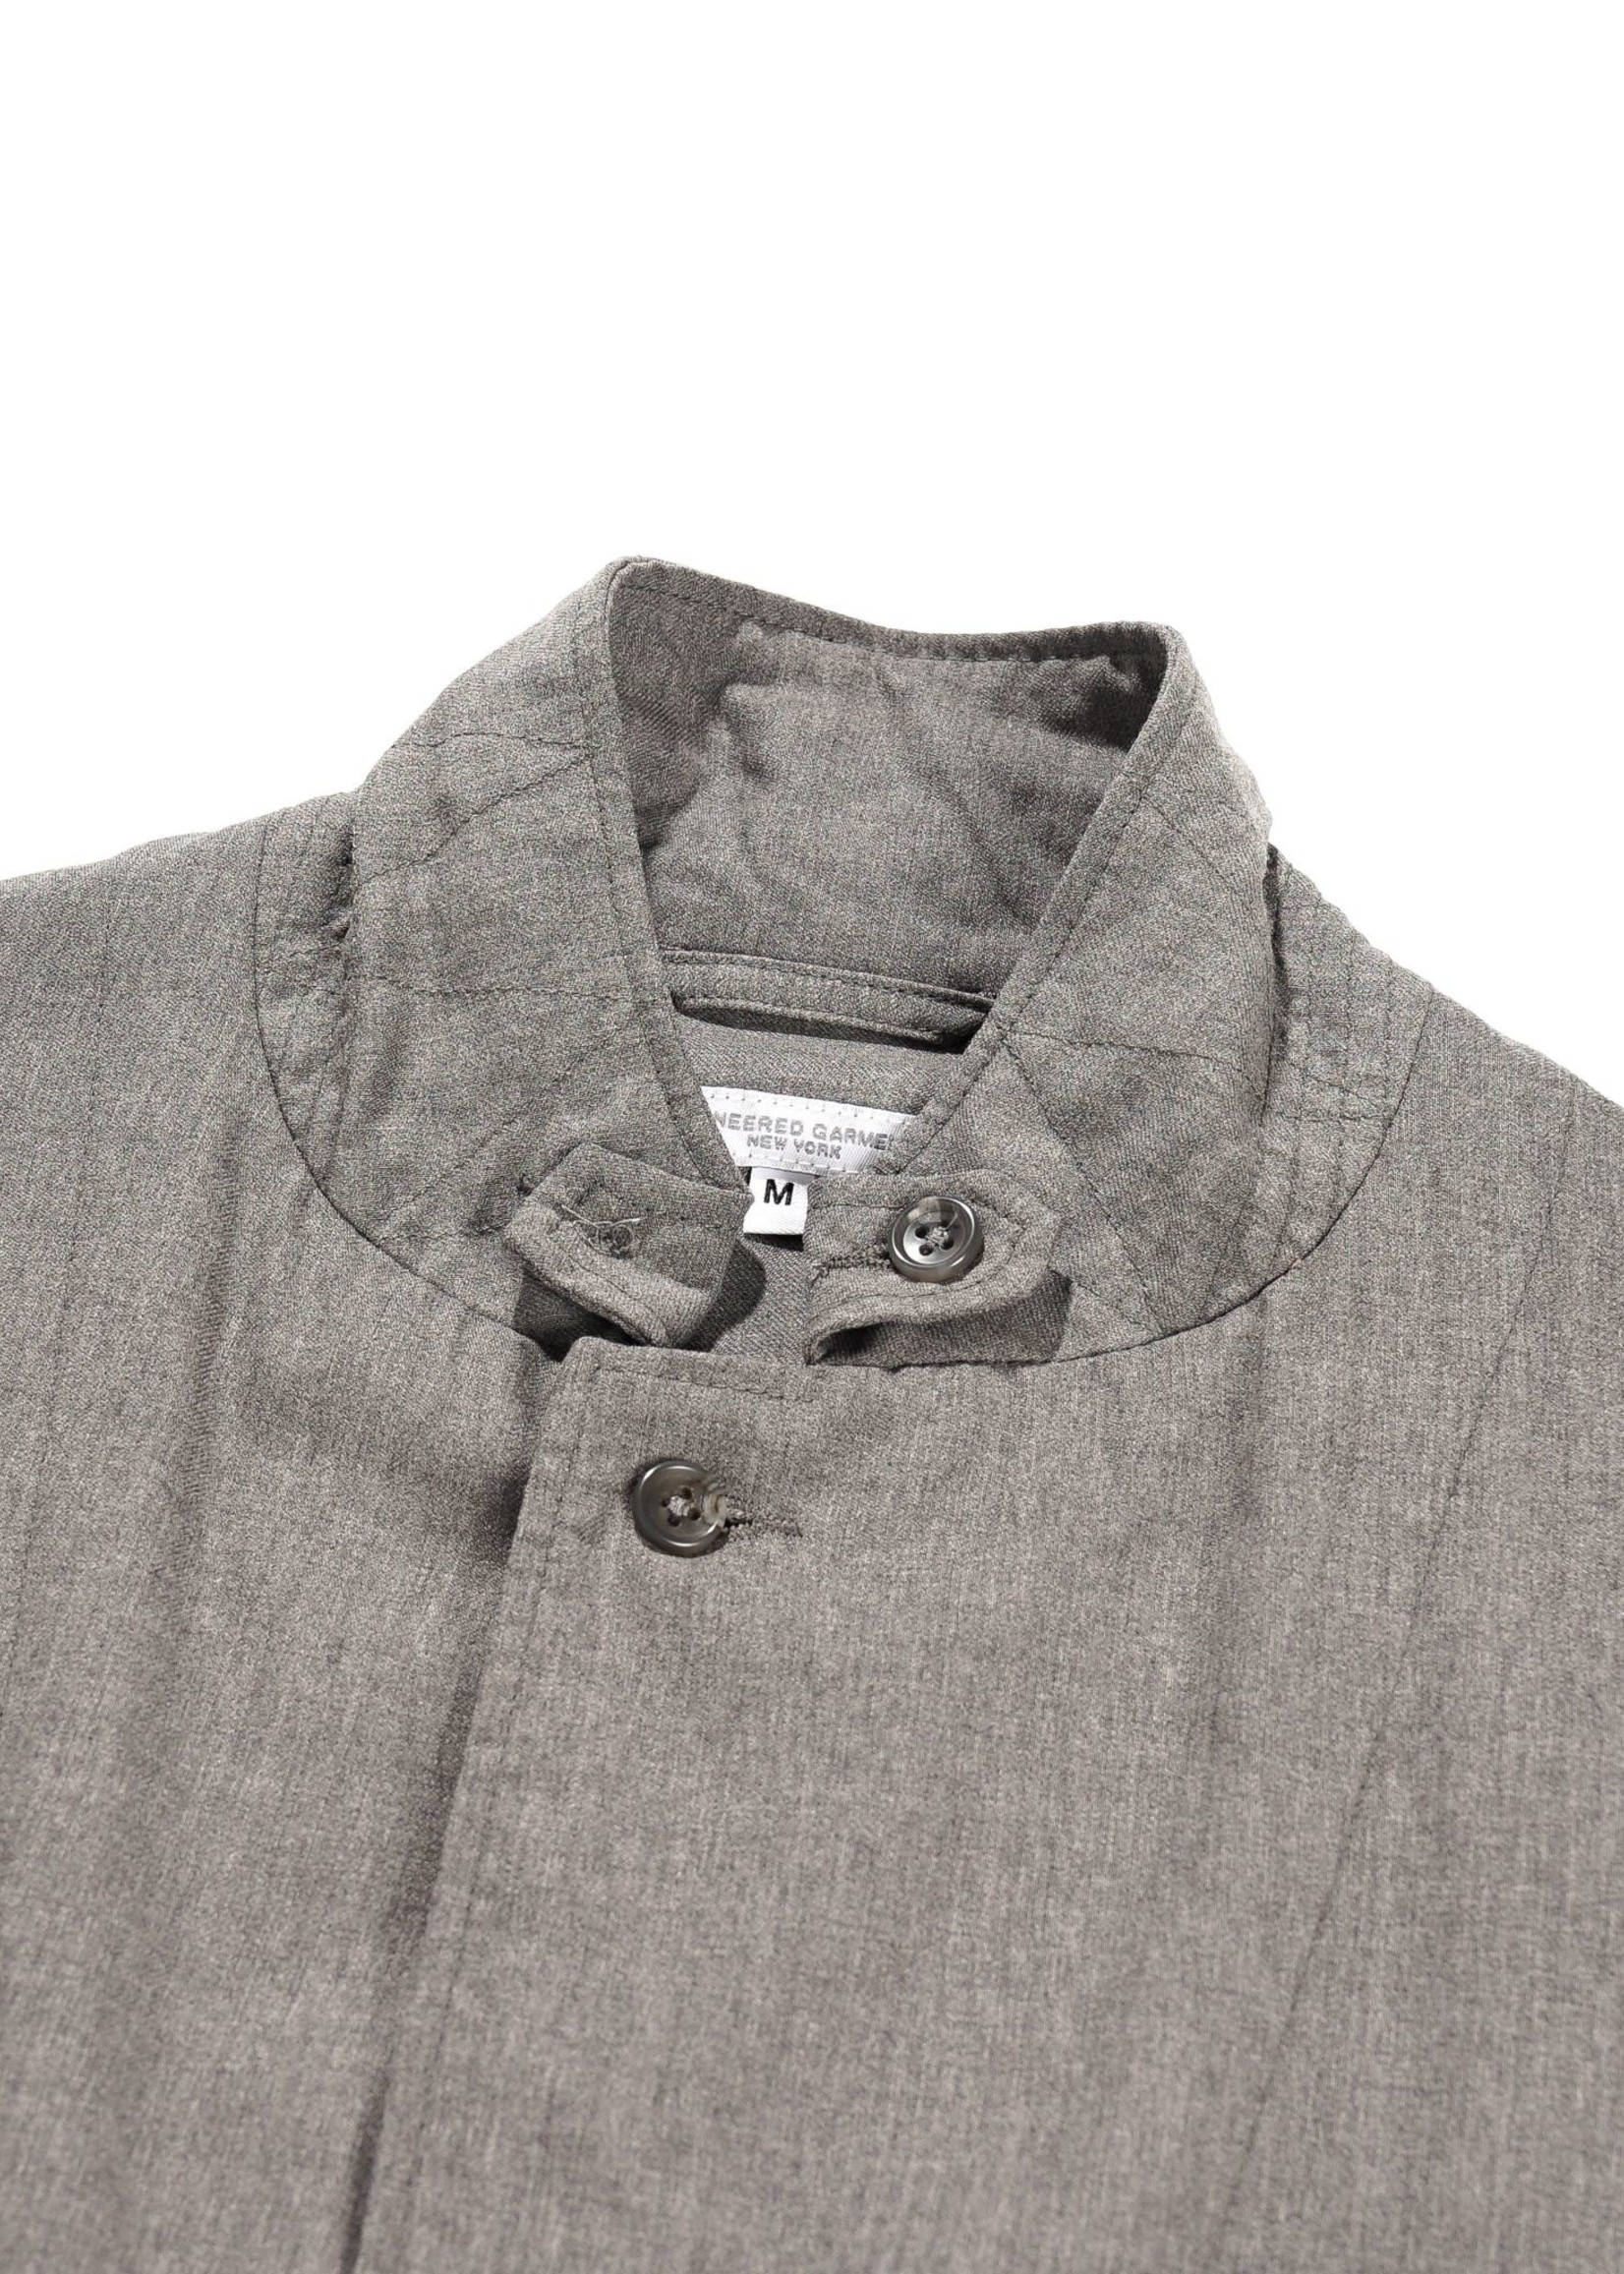 Engineered Garments Engineered Garments Loiter Jacket Grey Tropical Wool